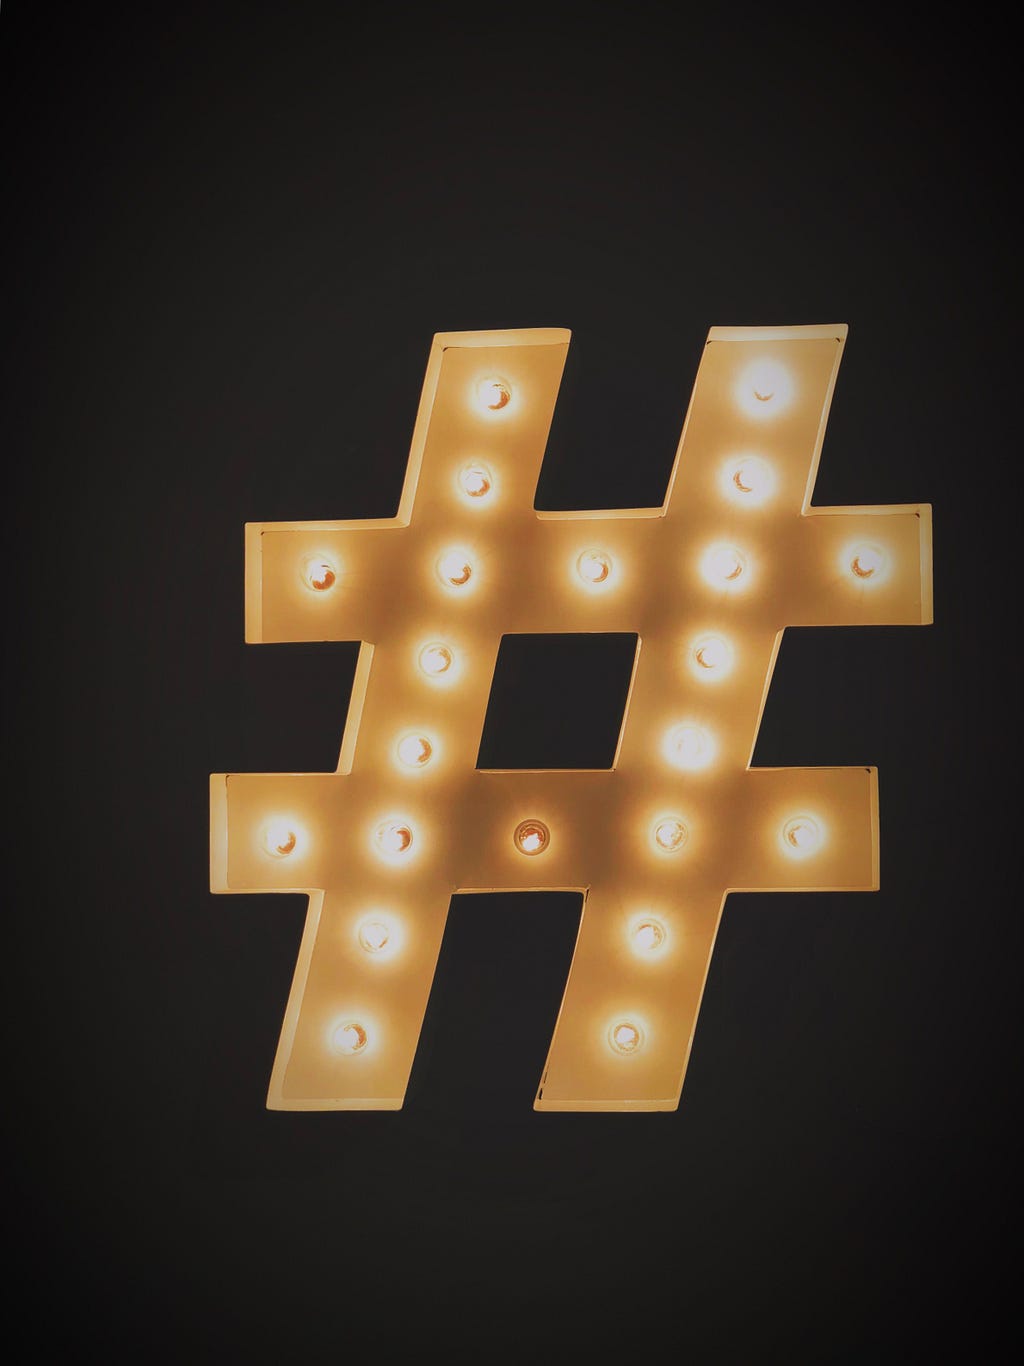 Image of hashtag symbol